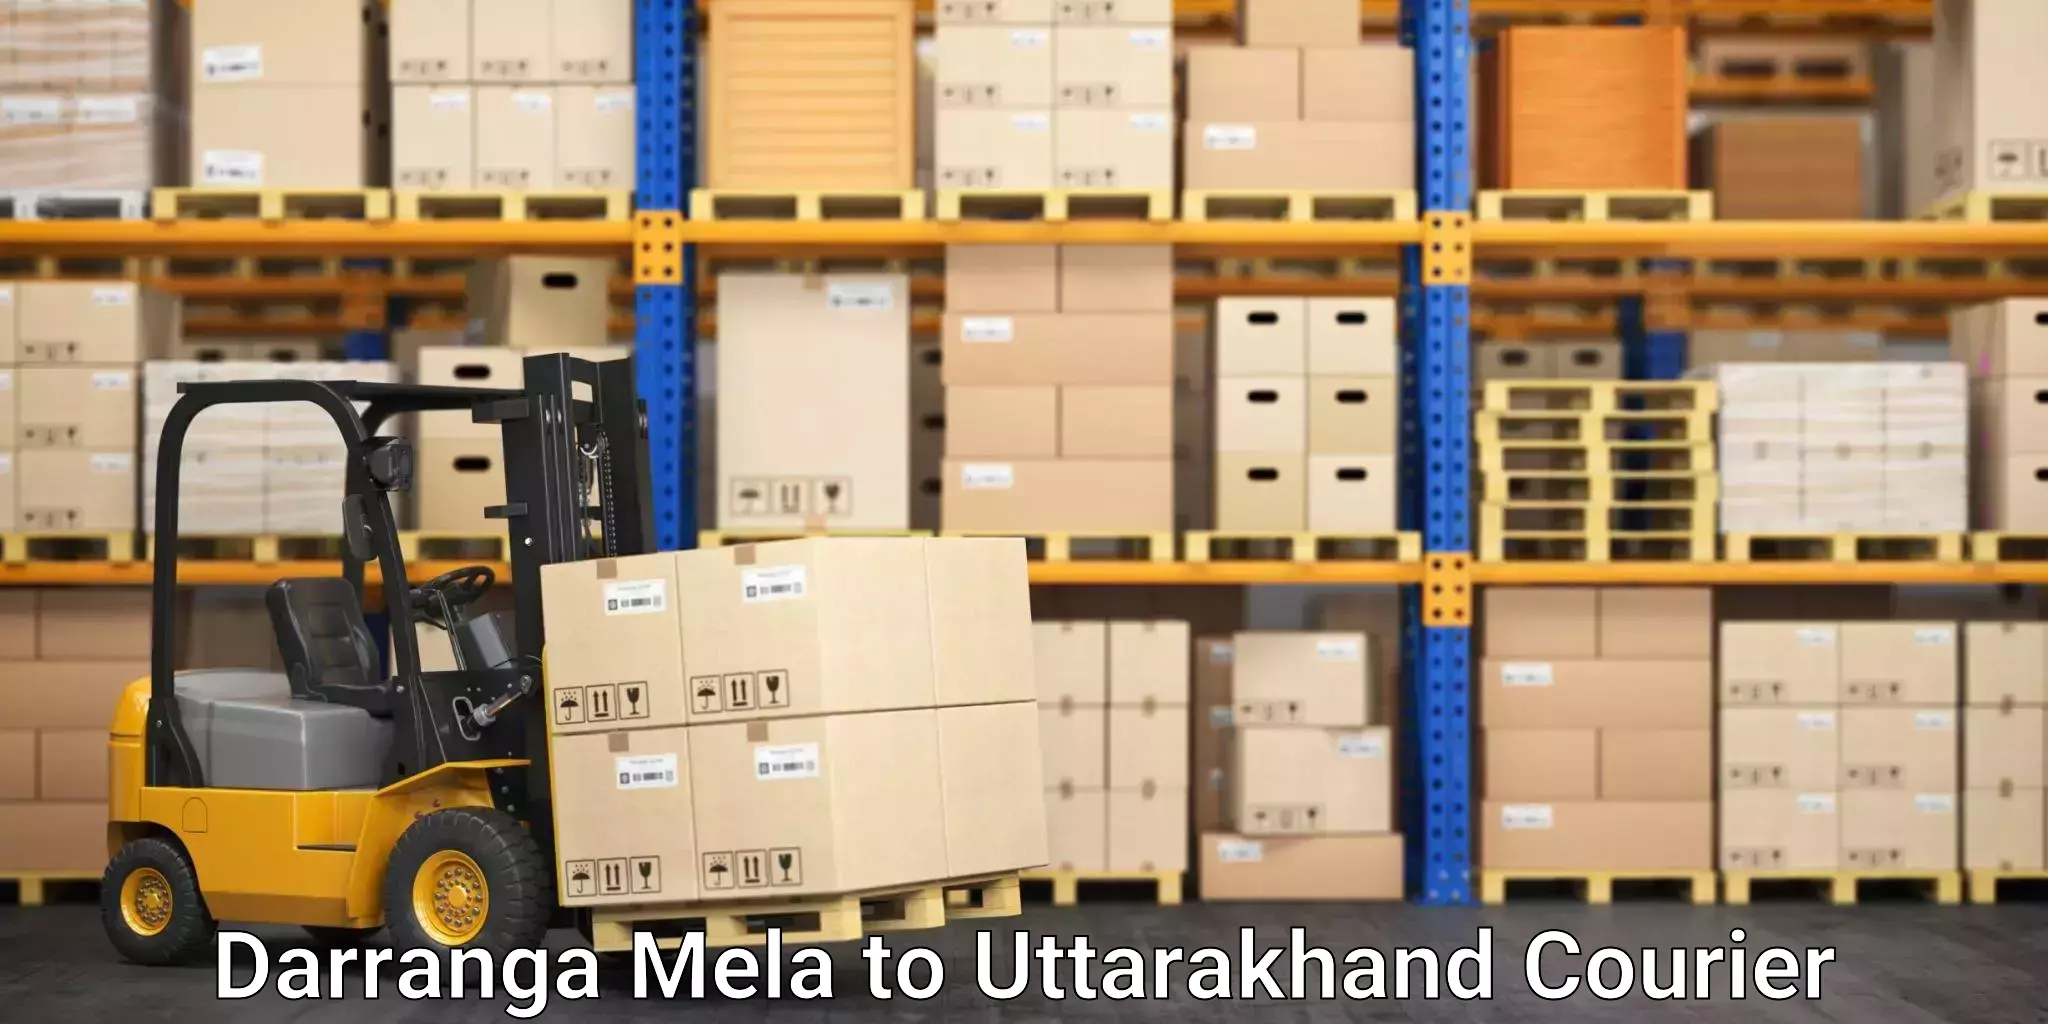 Business courier solutions Darranga Mela to Pithoragarh